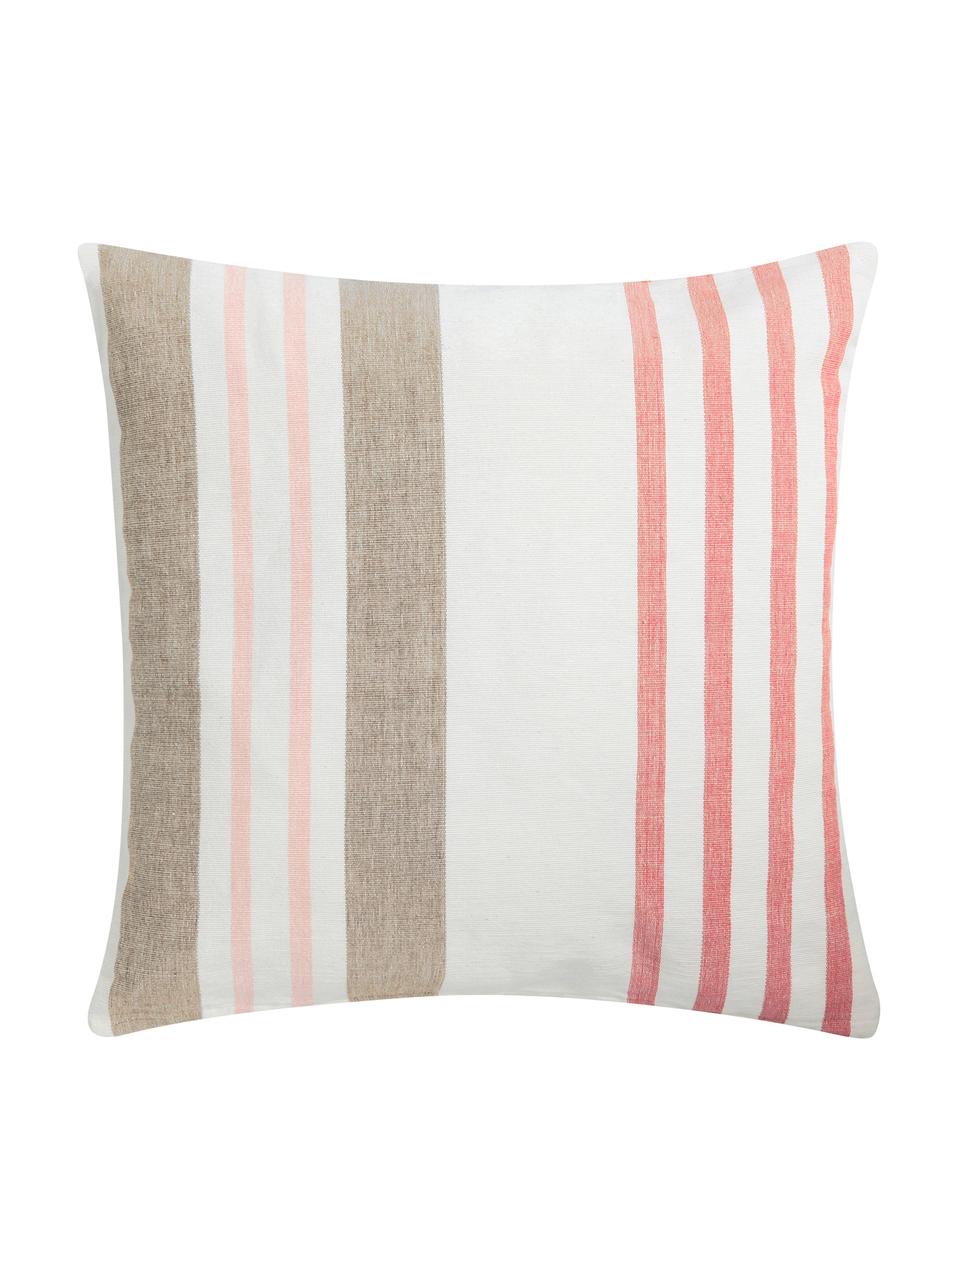 Poduszka z wypełnieniem Beach House, Biały, brązowy, blady różowy, S 45 x D 45 cm